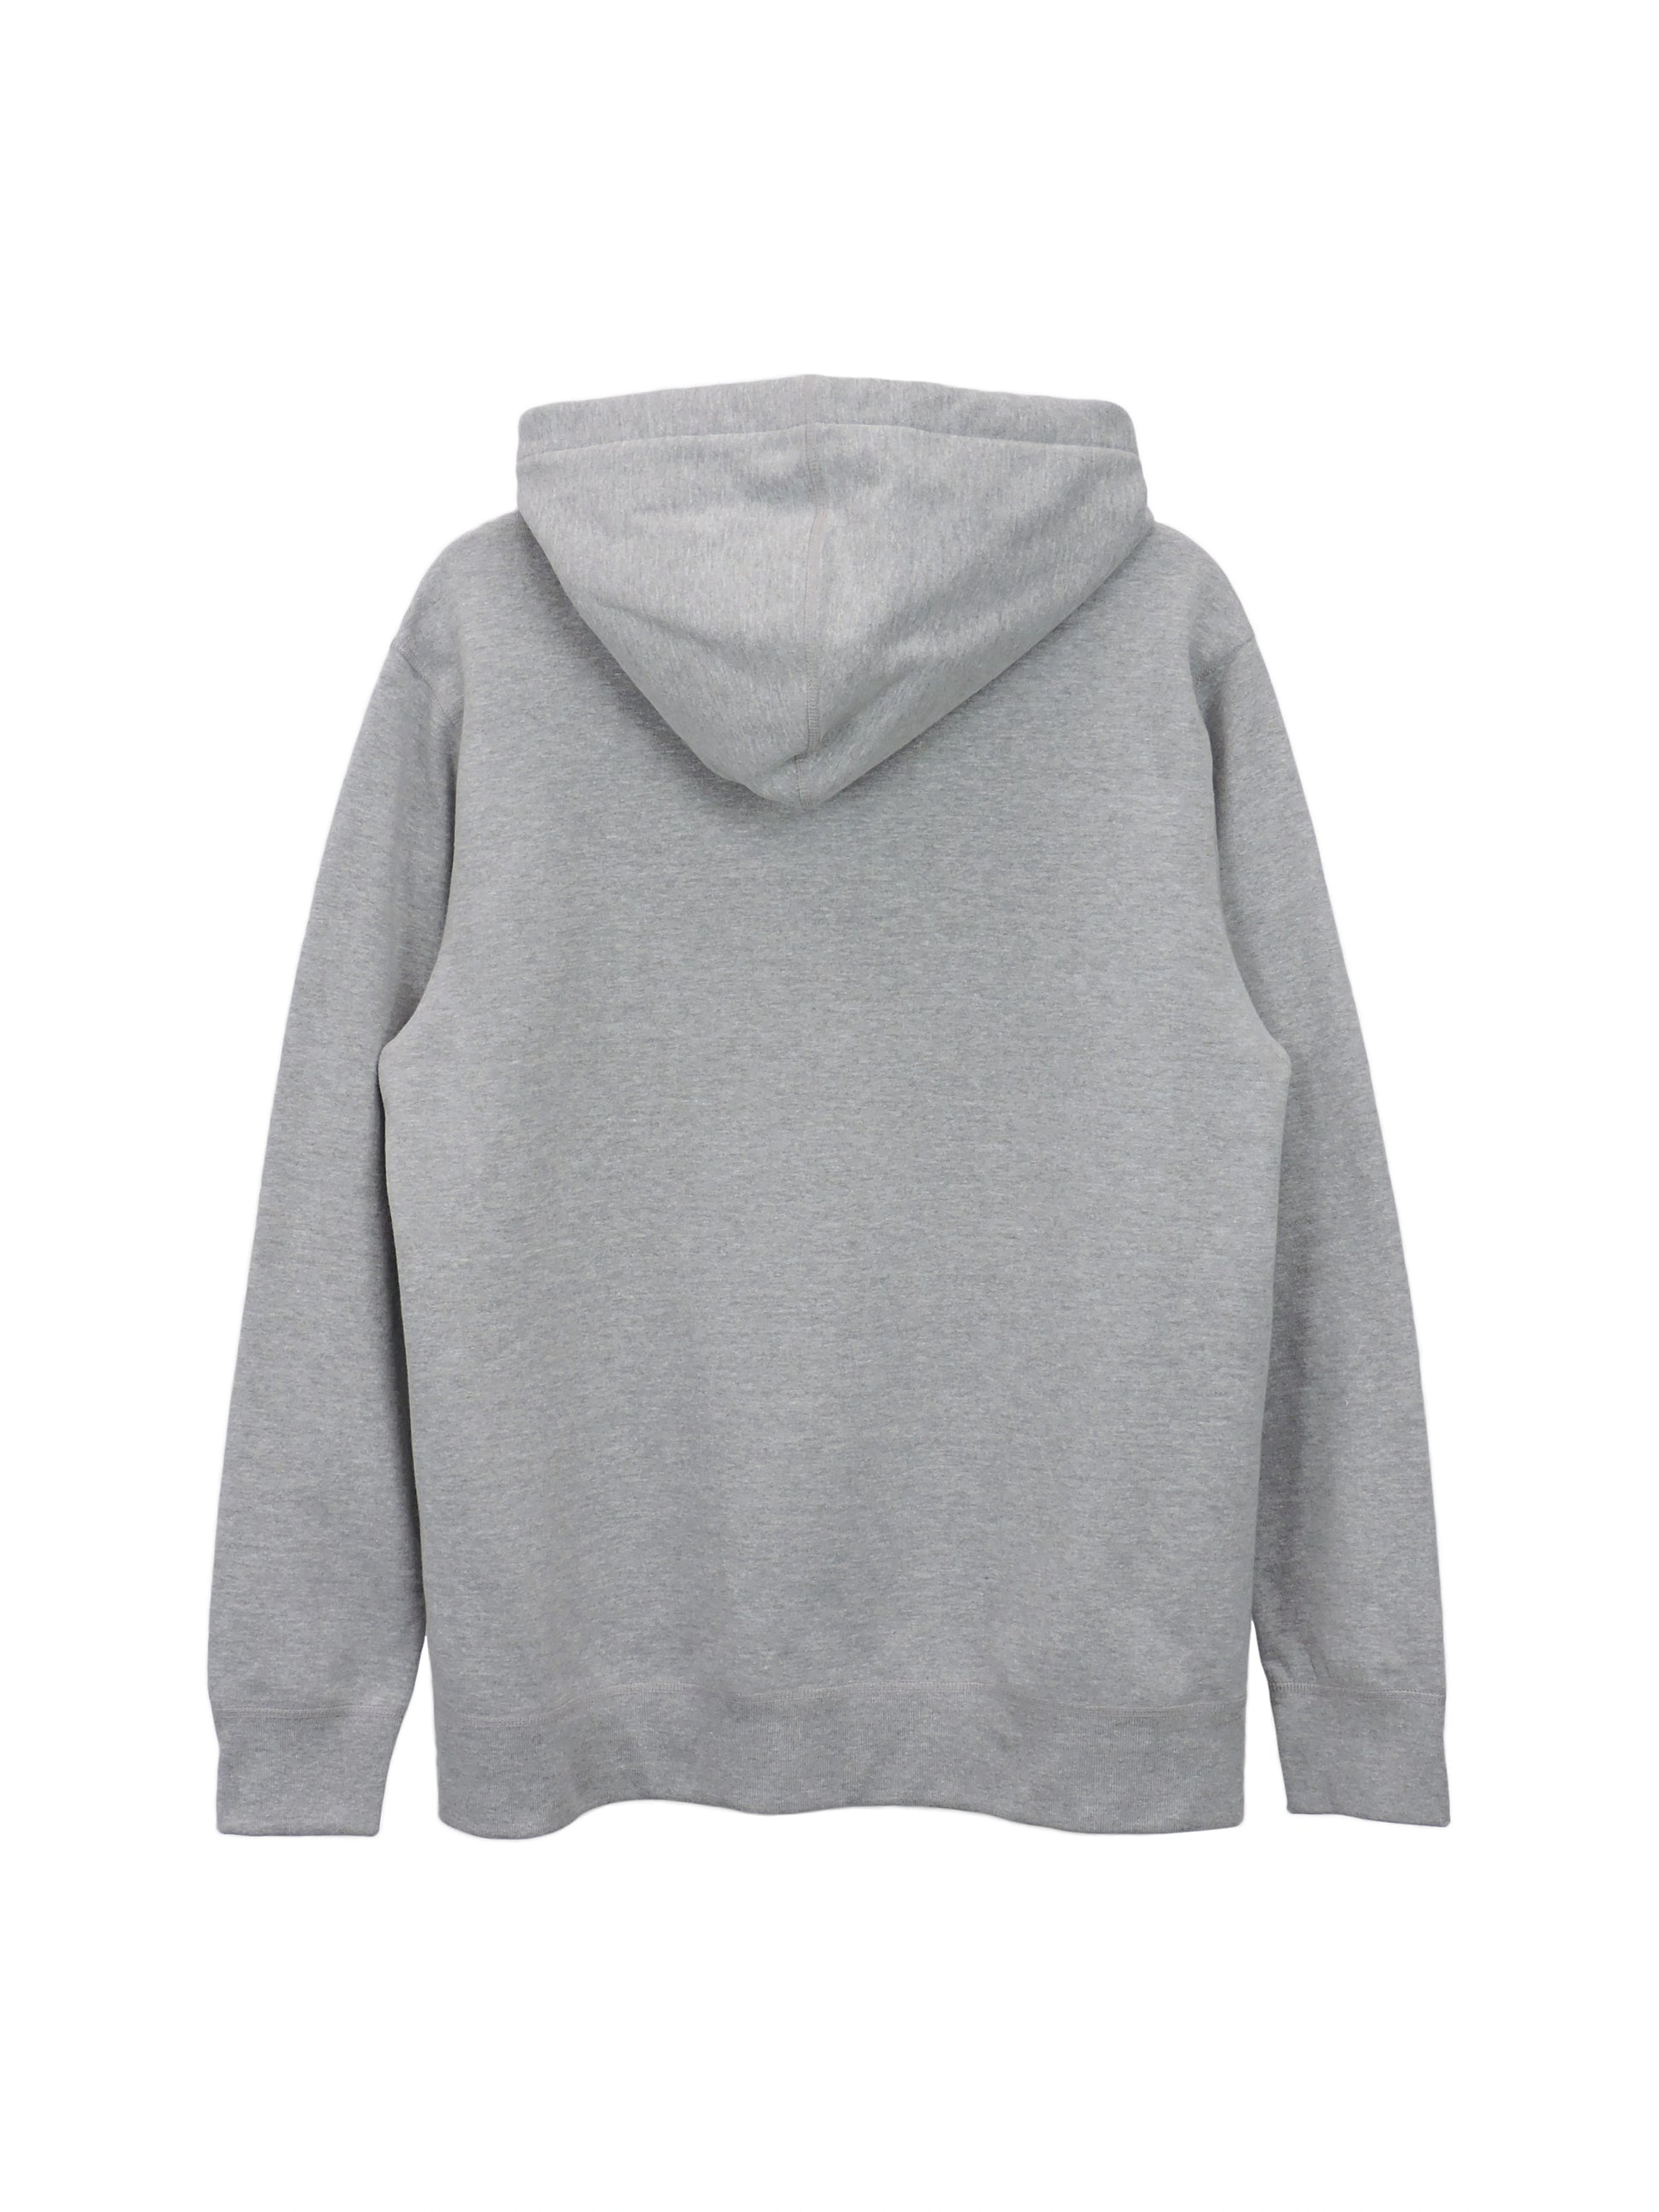 Weighted Hooded Sweatshirt, Medium, Gray